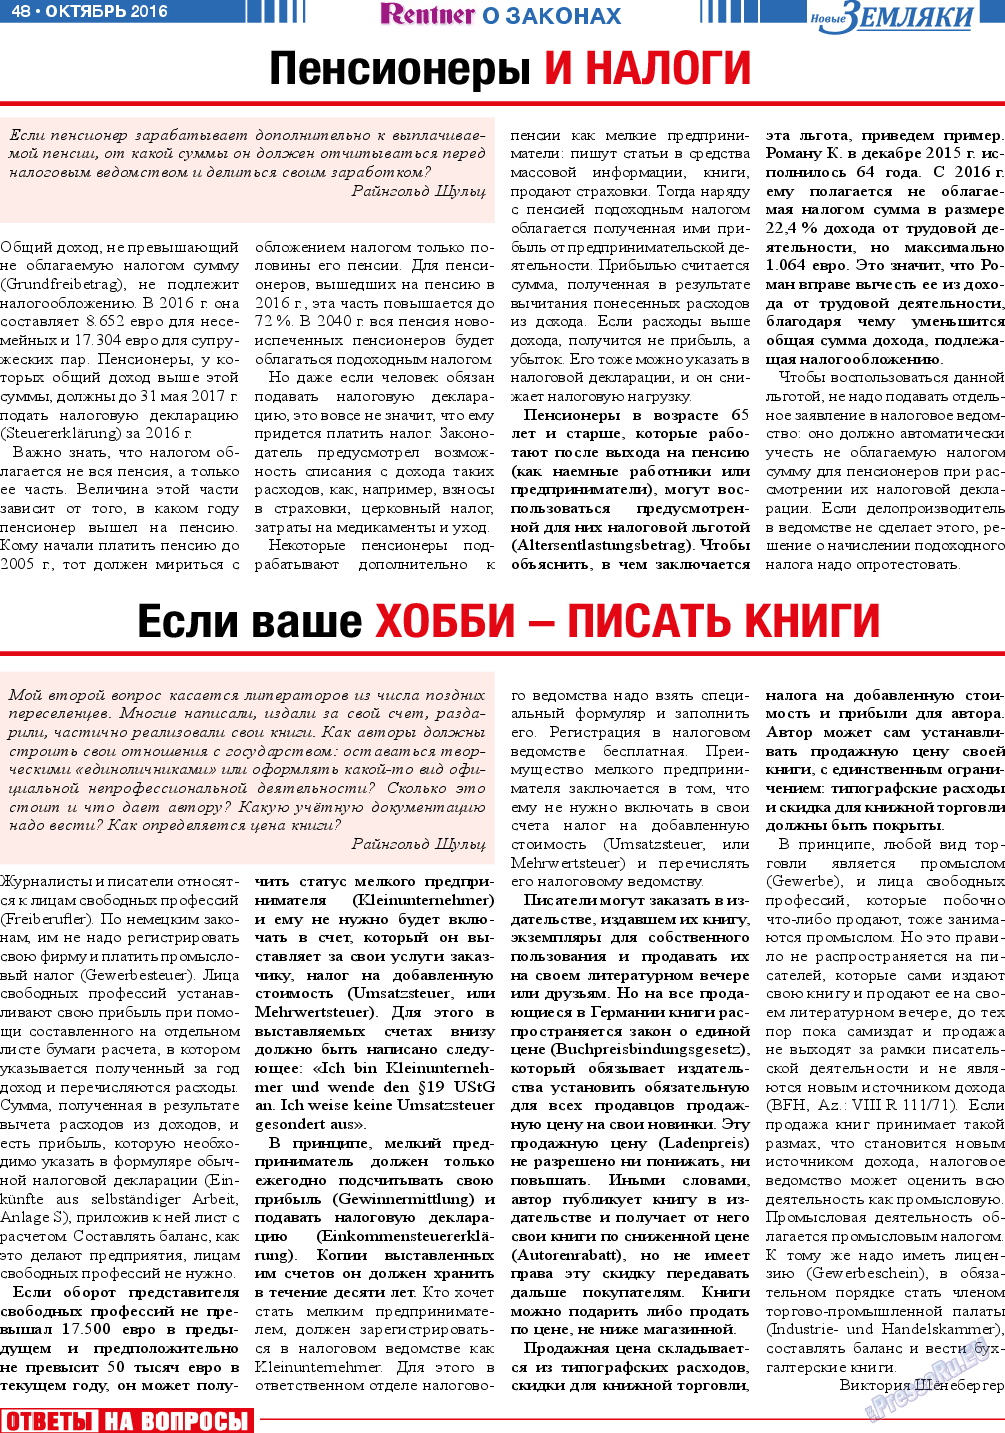 Новые Земляки (газета). 2016 год, номер 10, стр. 48